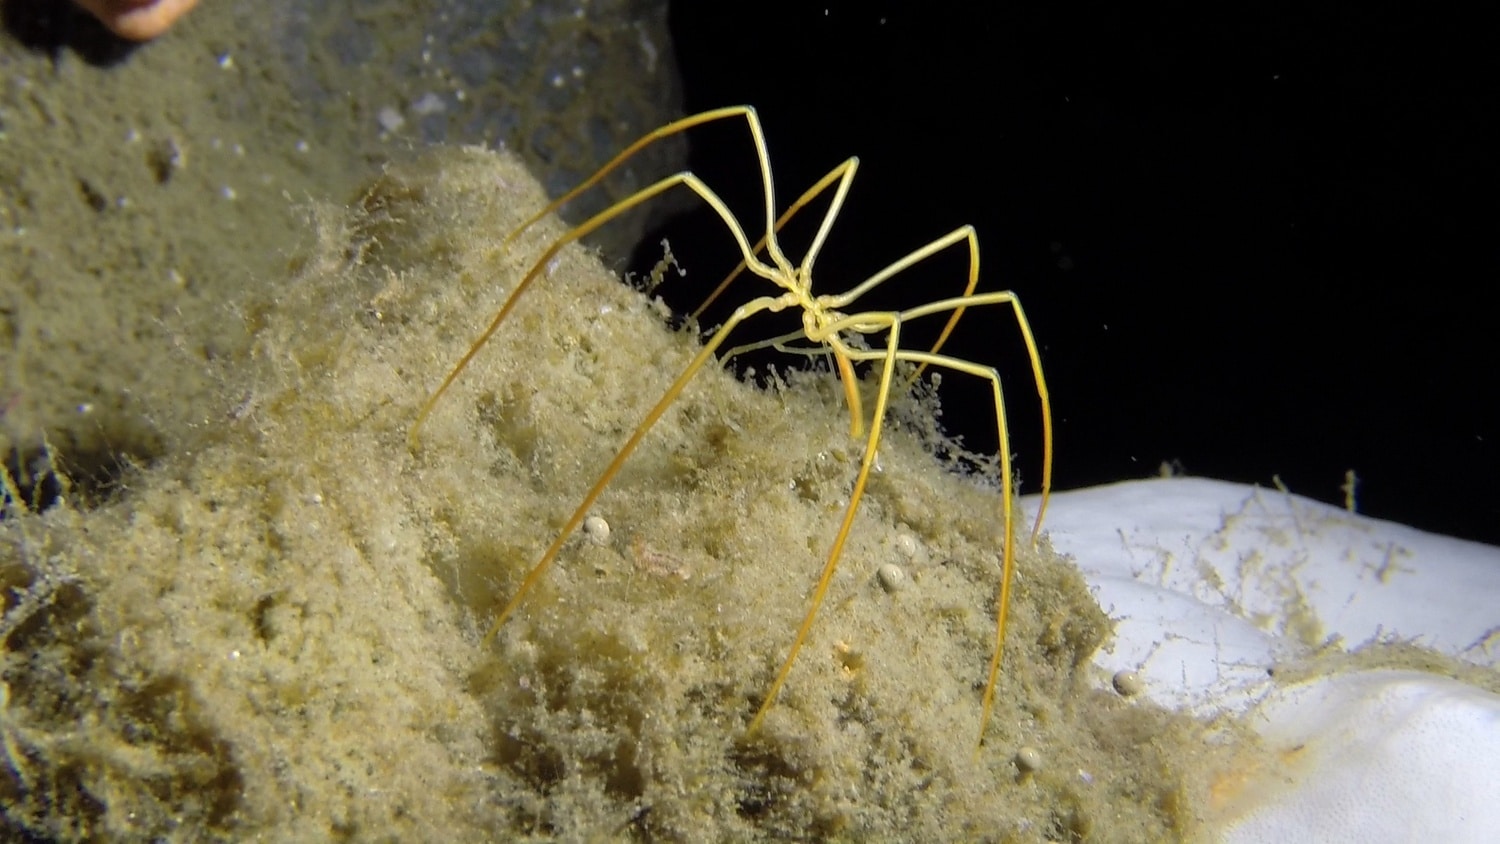 Νέα μελέτη: Οι «θαλάσσιες αράχνες» είναι ικανές να αναγεννήσουν μέρος του σώματός τους (βίντεο)